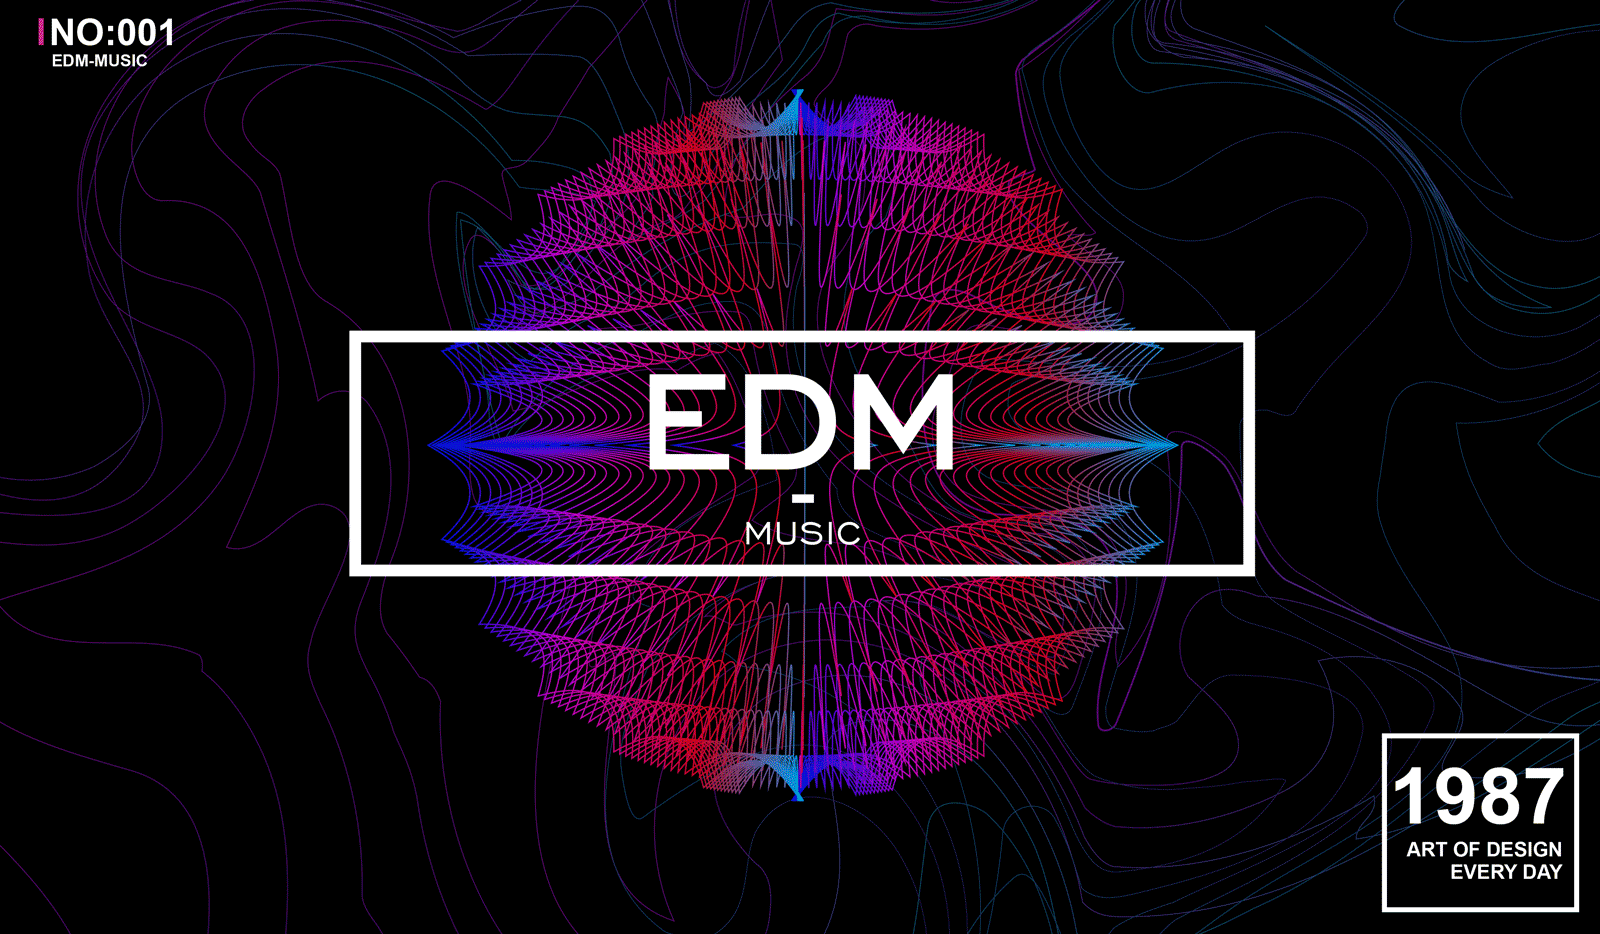 Edm house music. EDM обложка. Картинки EDM. Музыкальные логотипы EDM. EDM фон.